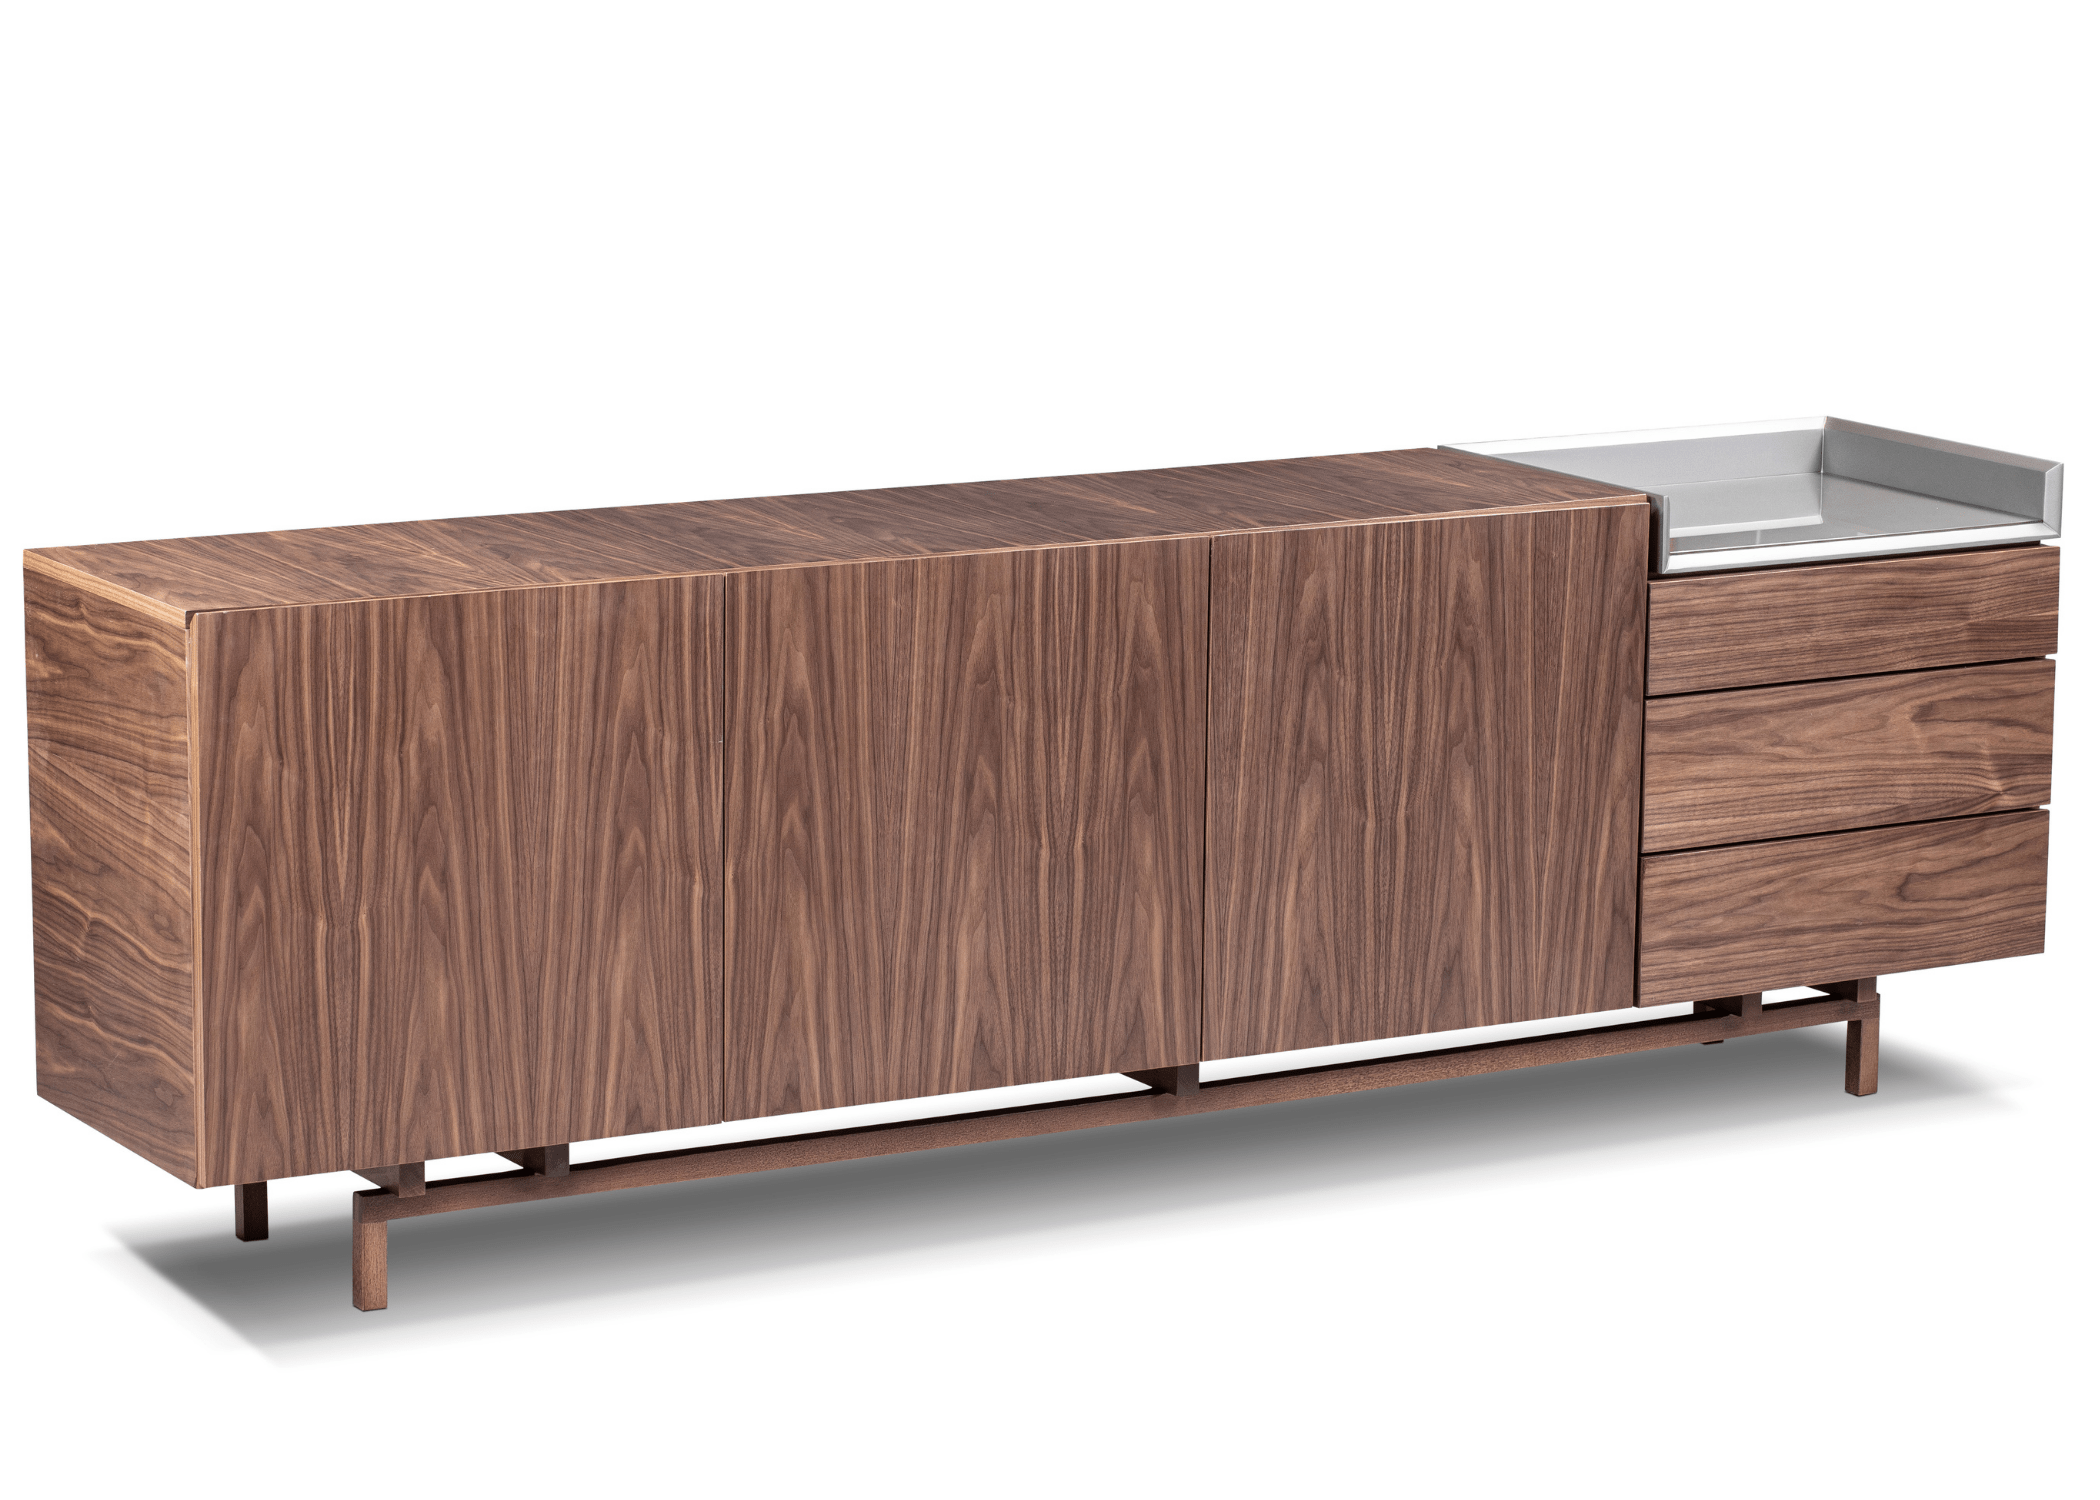 Visão frontal do Buffet Atena em lâmina de madeira, destacando seu design sofisticado e espaço de armazenamento.